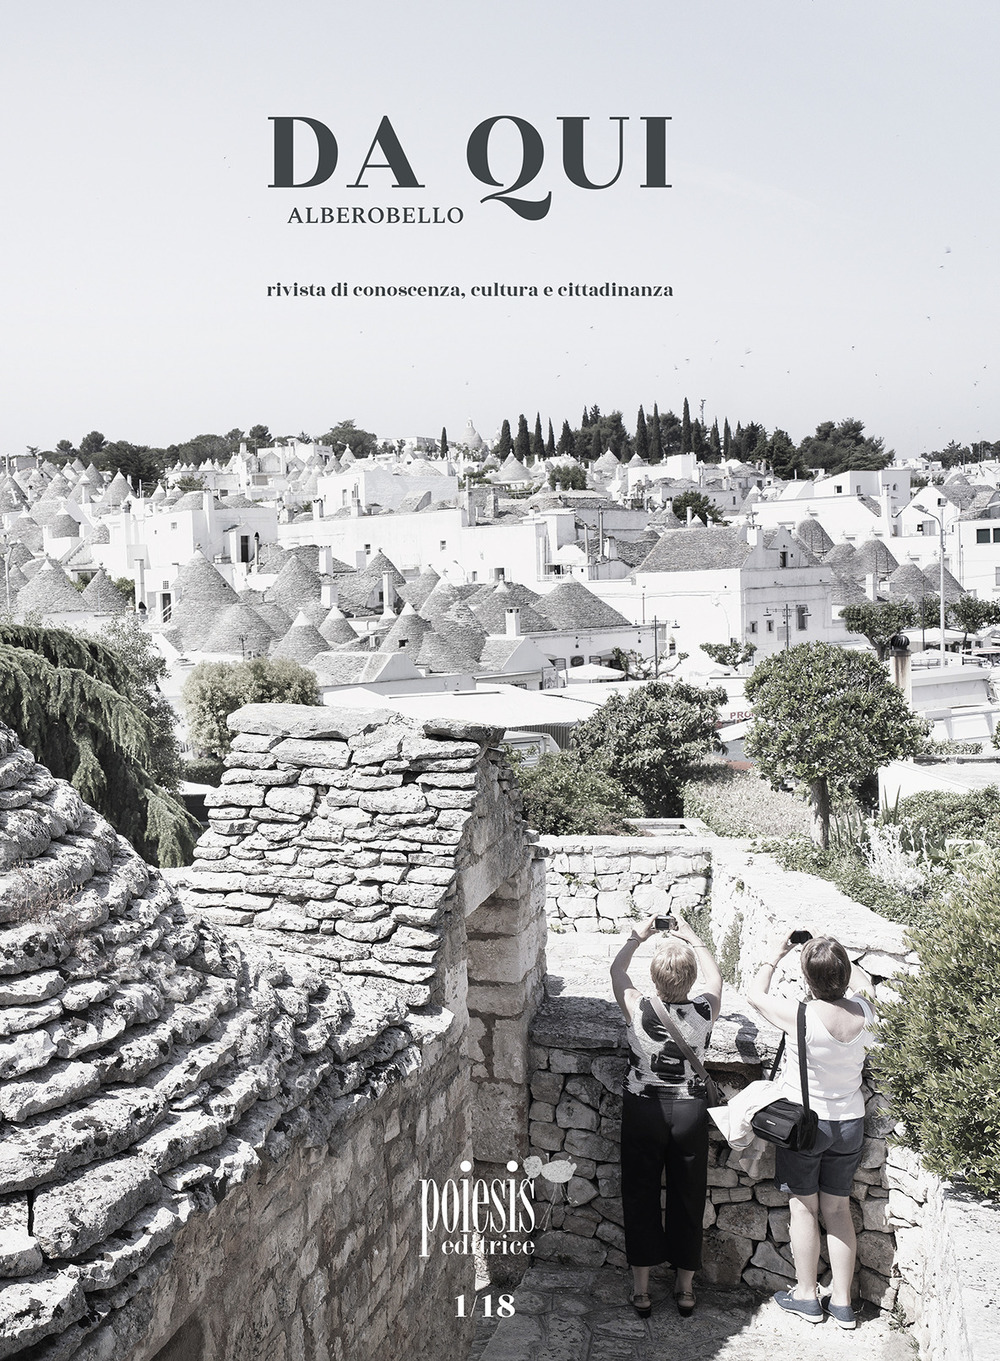 Da qui Alberobello. Rivista di conoscenza, cultura e cittadinanza. Vol. 1